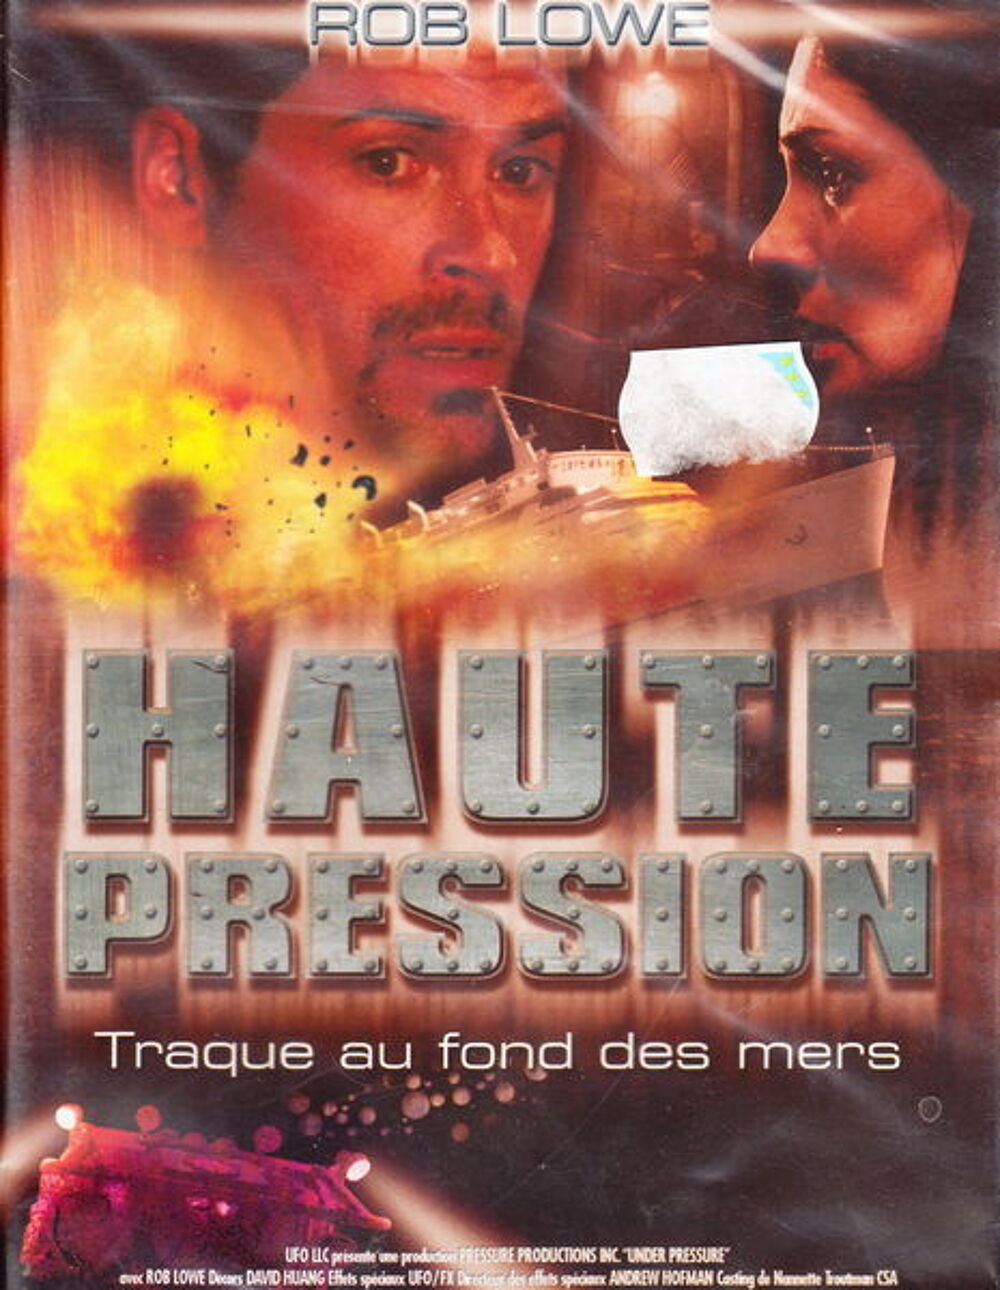 DVD Haute pression NEUF sous blister
DVD et blu-ray